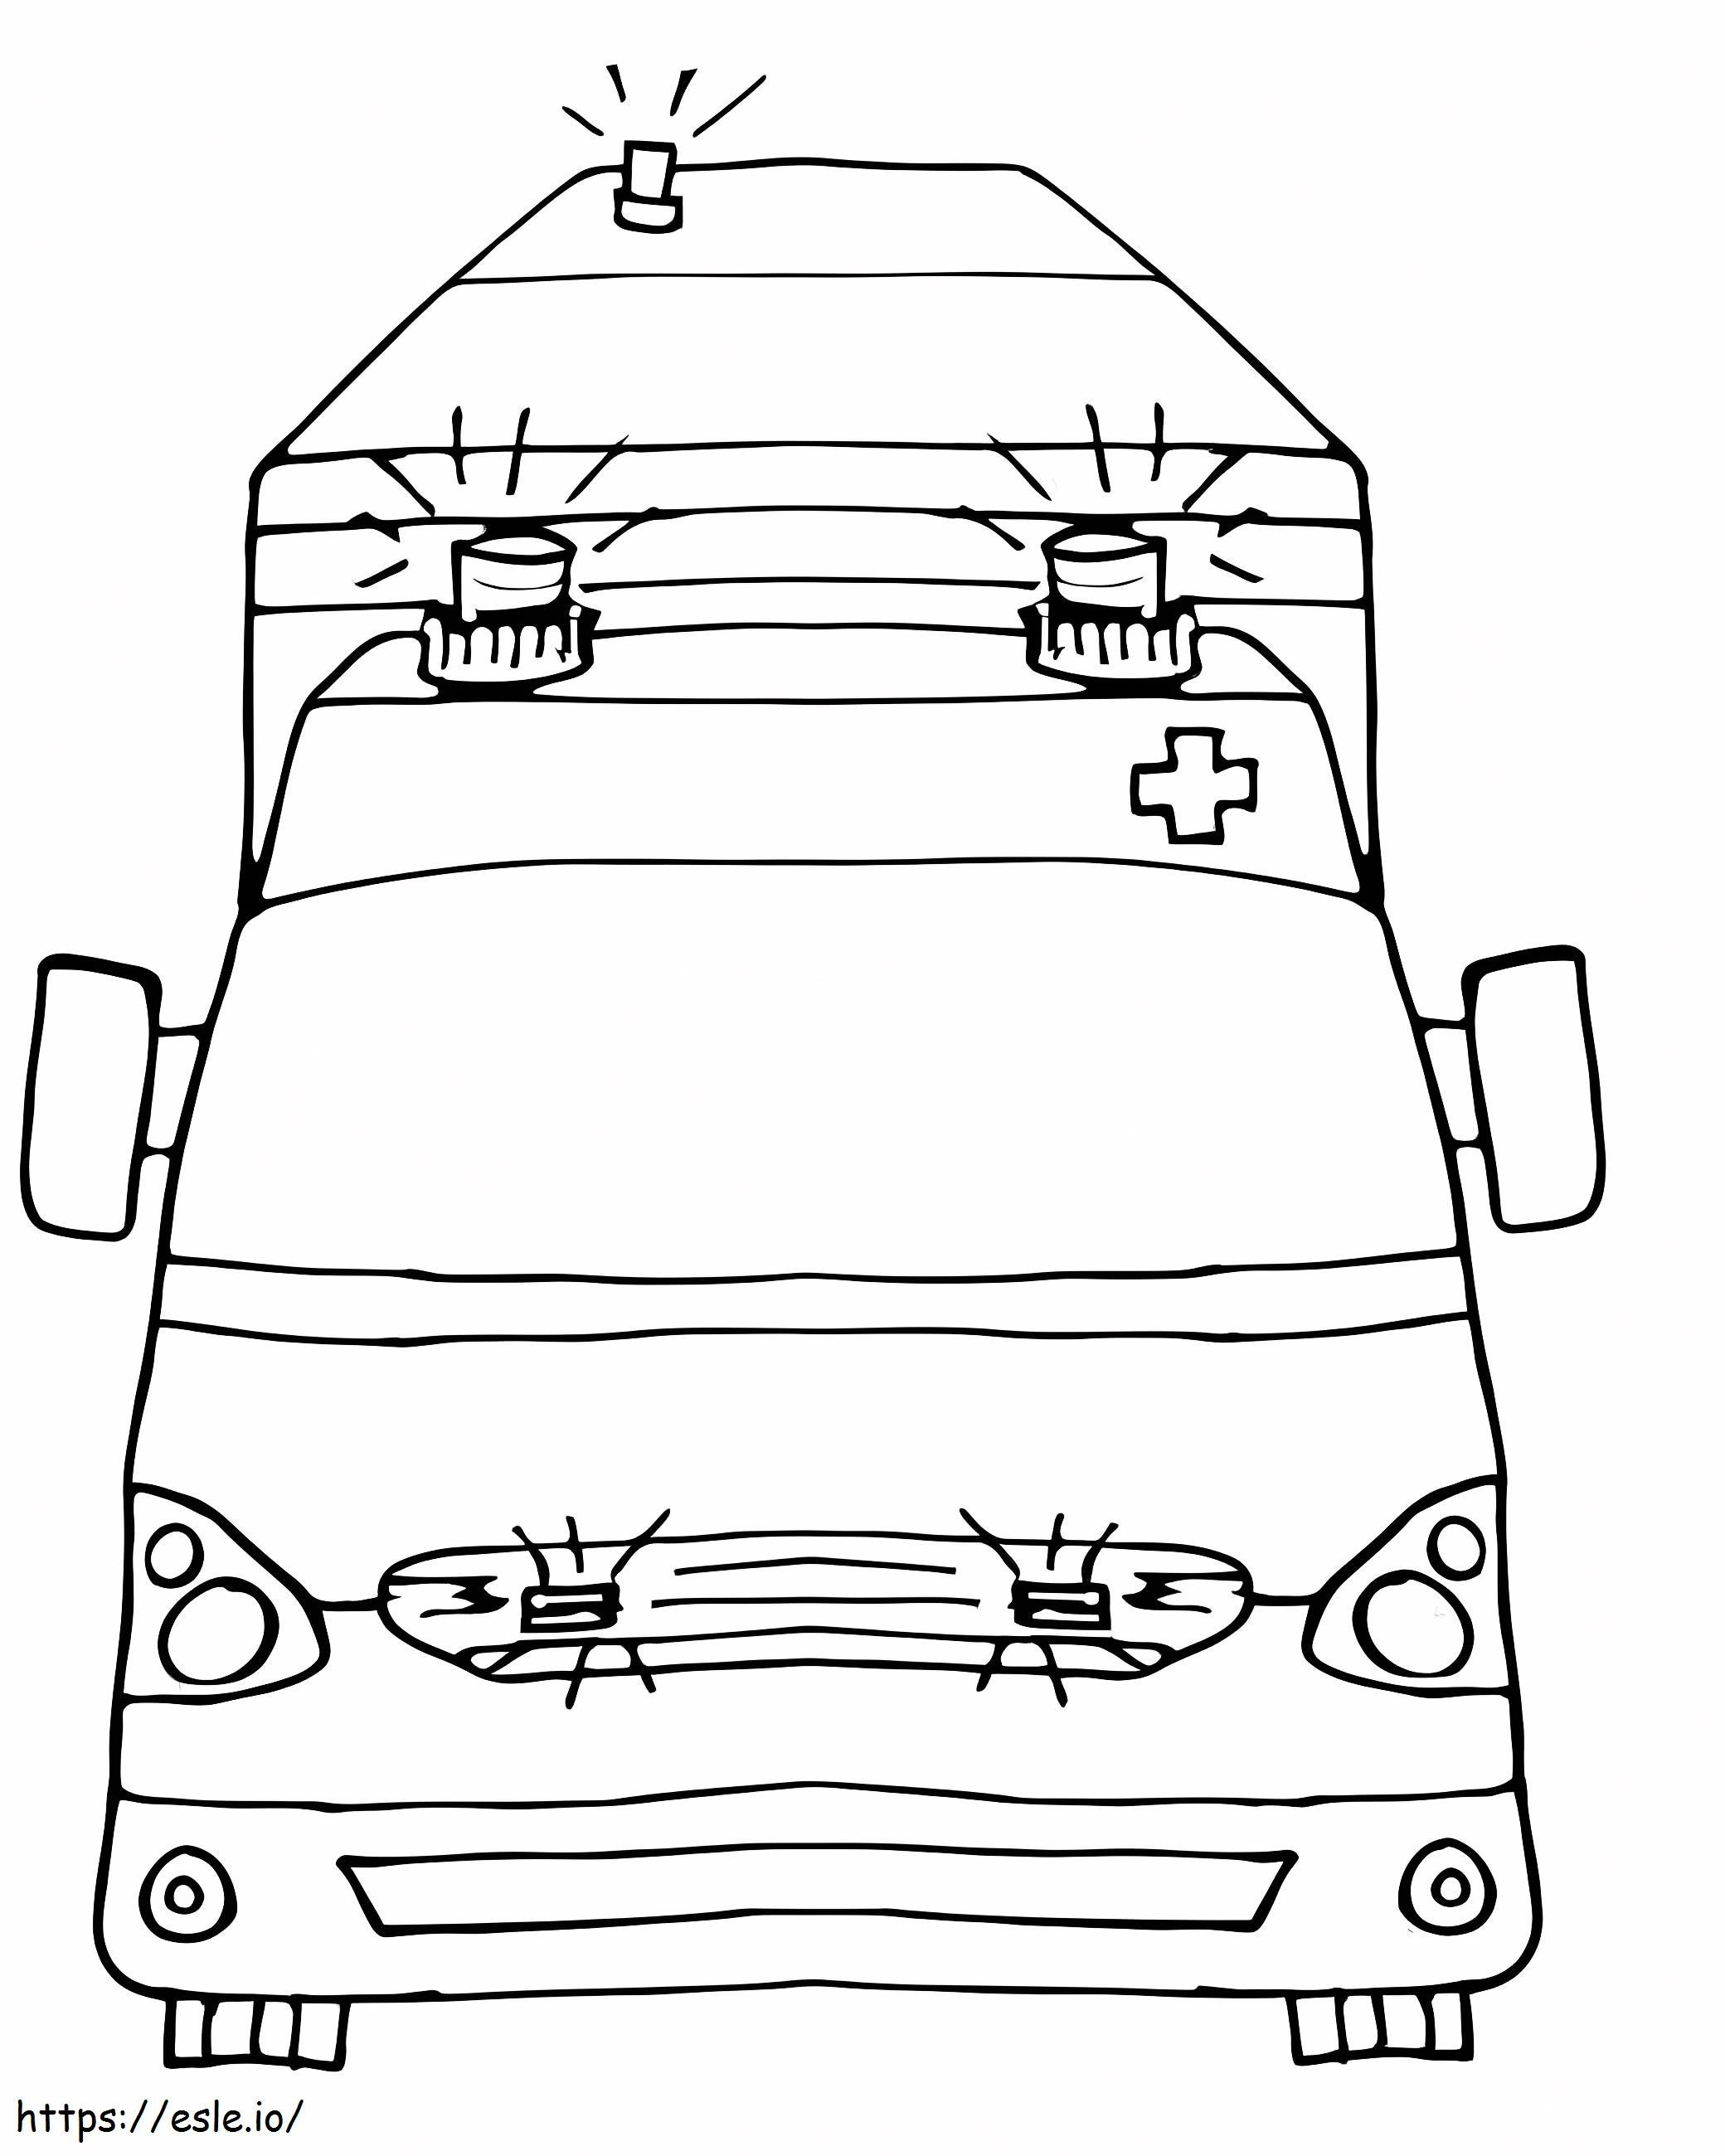 Ambulanza di disegno di base da colorare